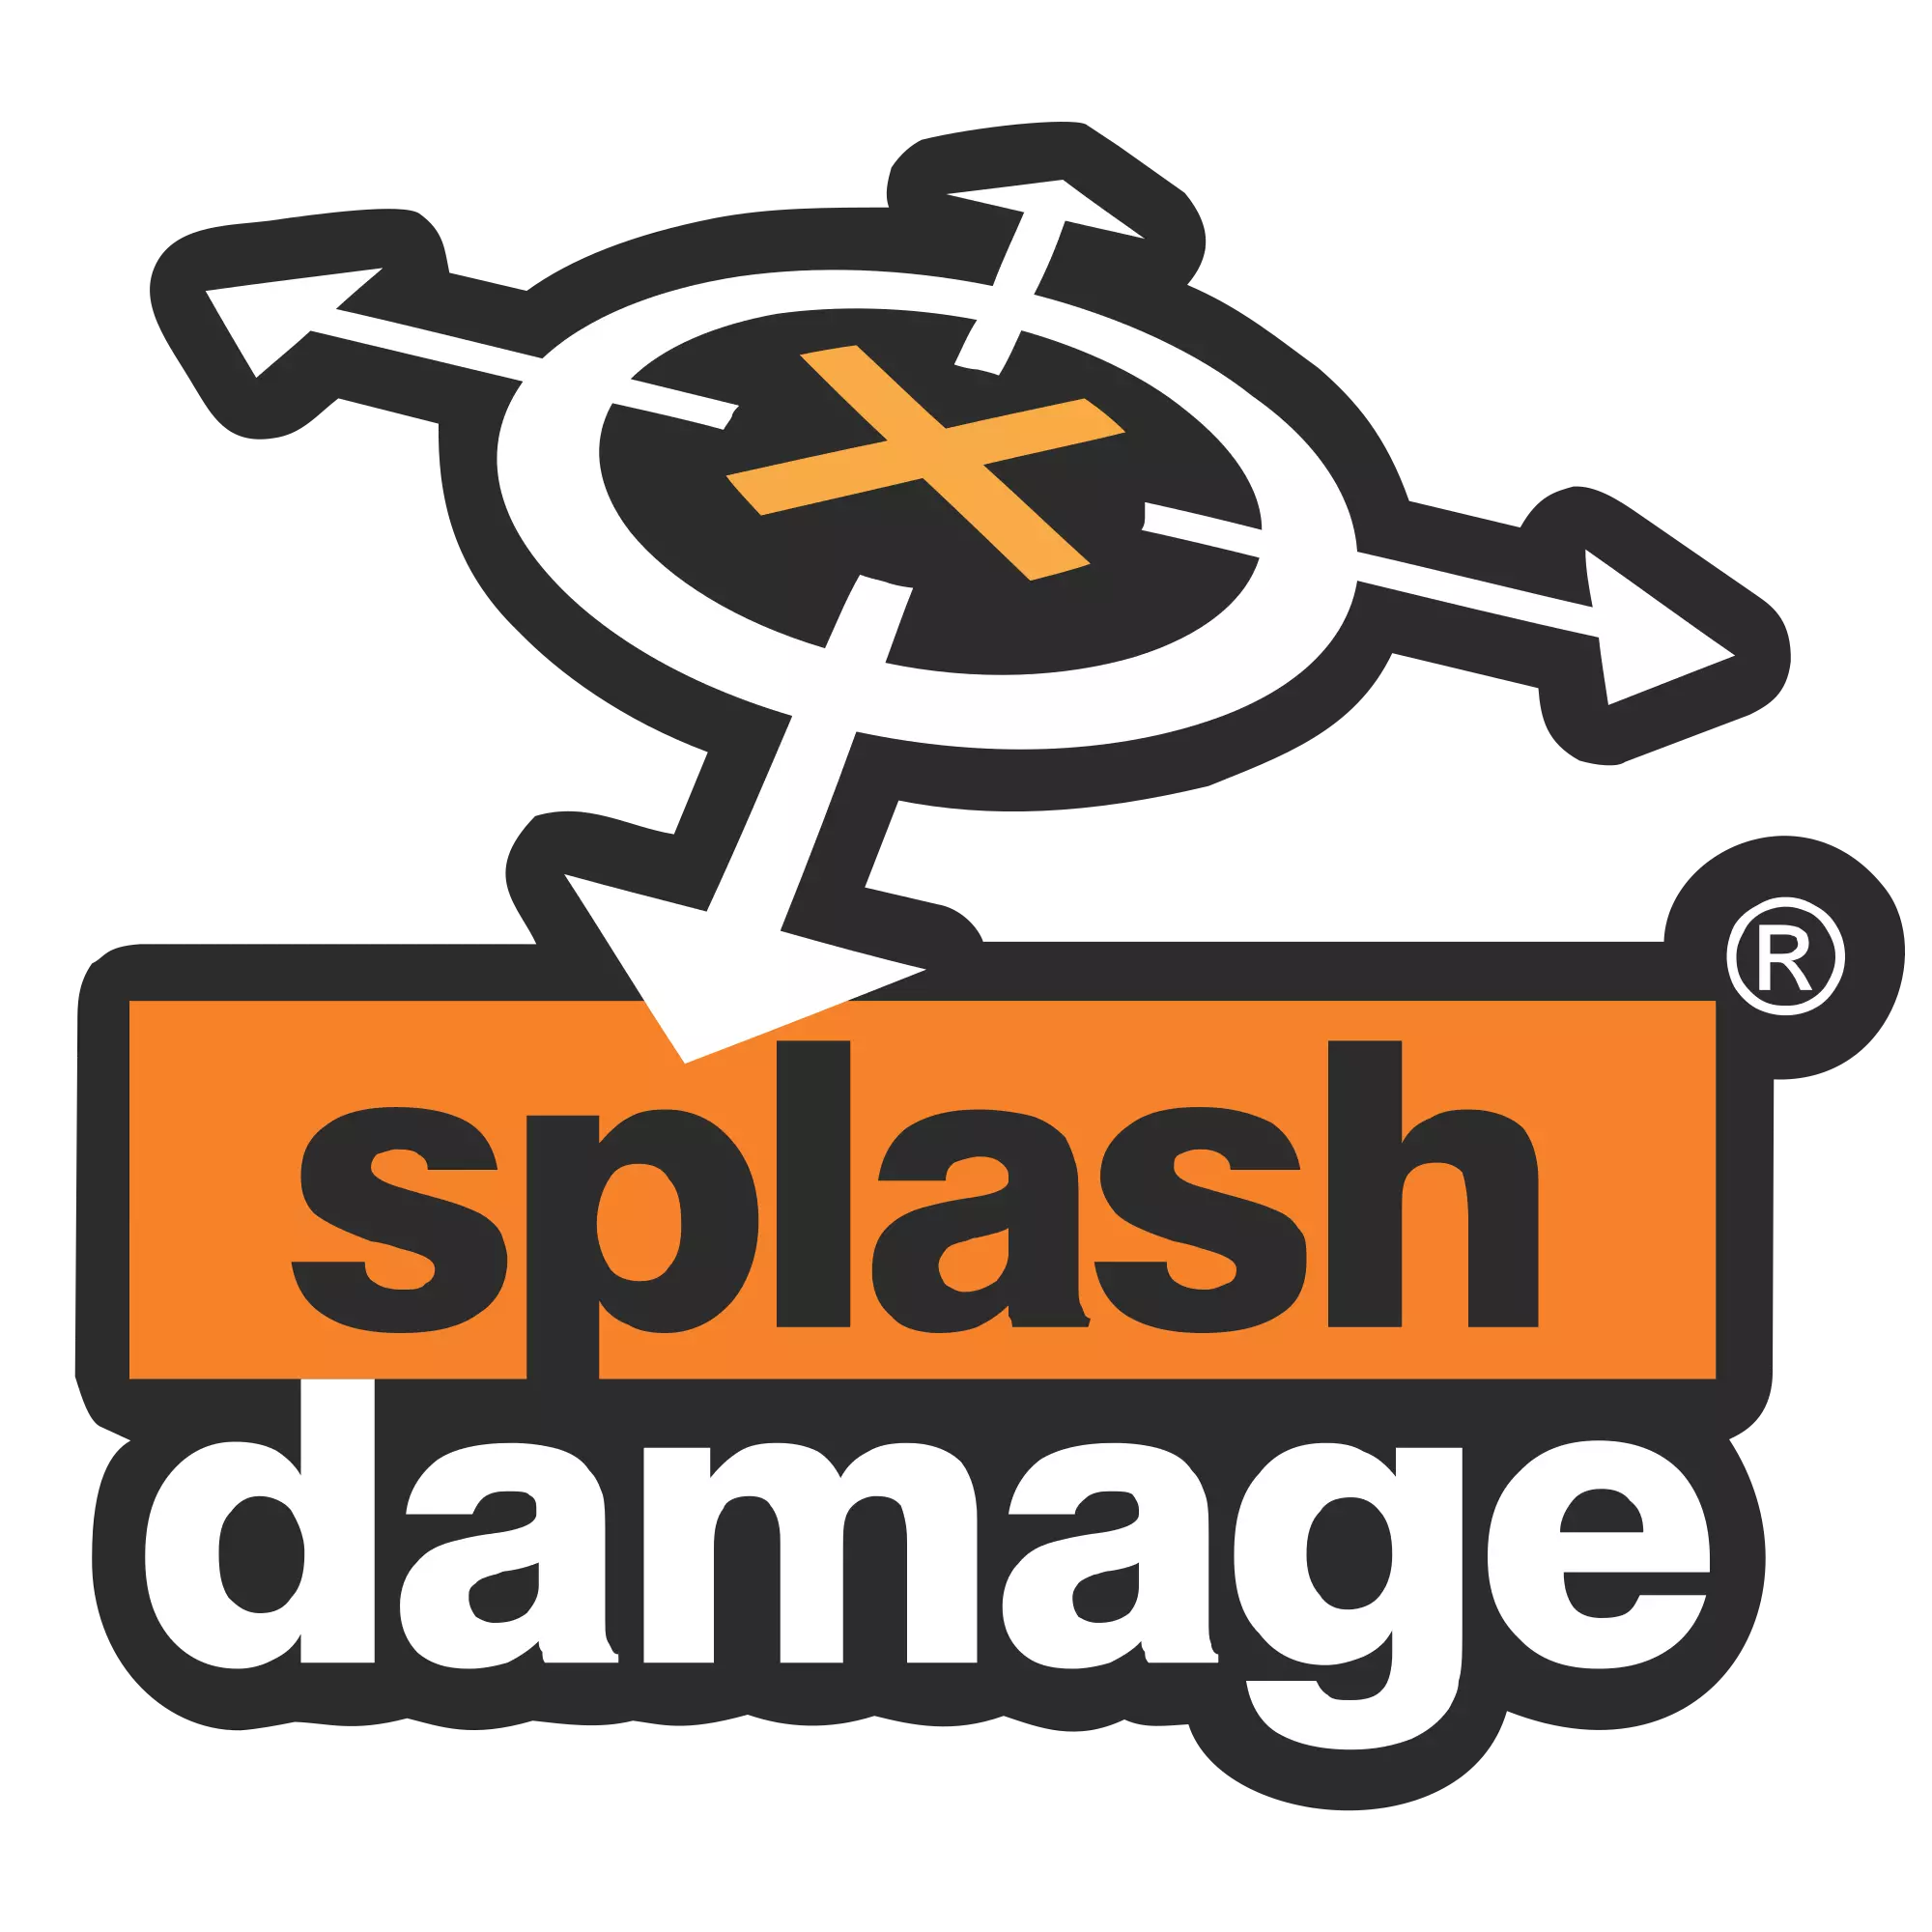 Splash Damage — частная компания, общество с ограниченной ответственностью, британский разработчик компьютерных игр.